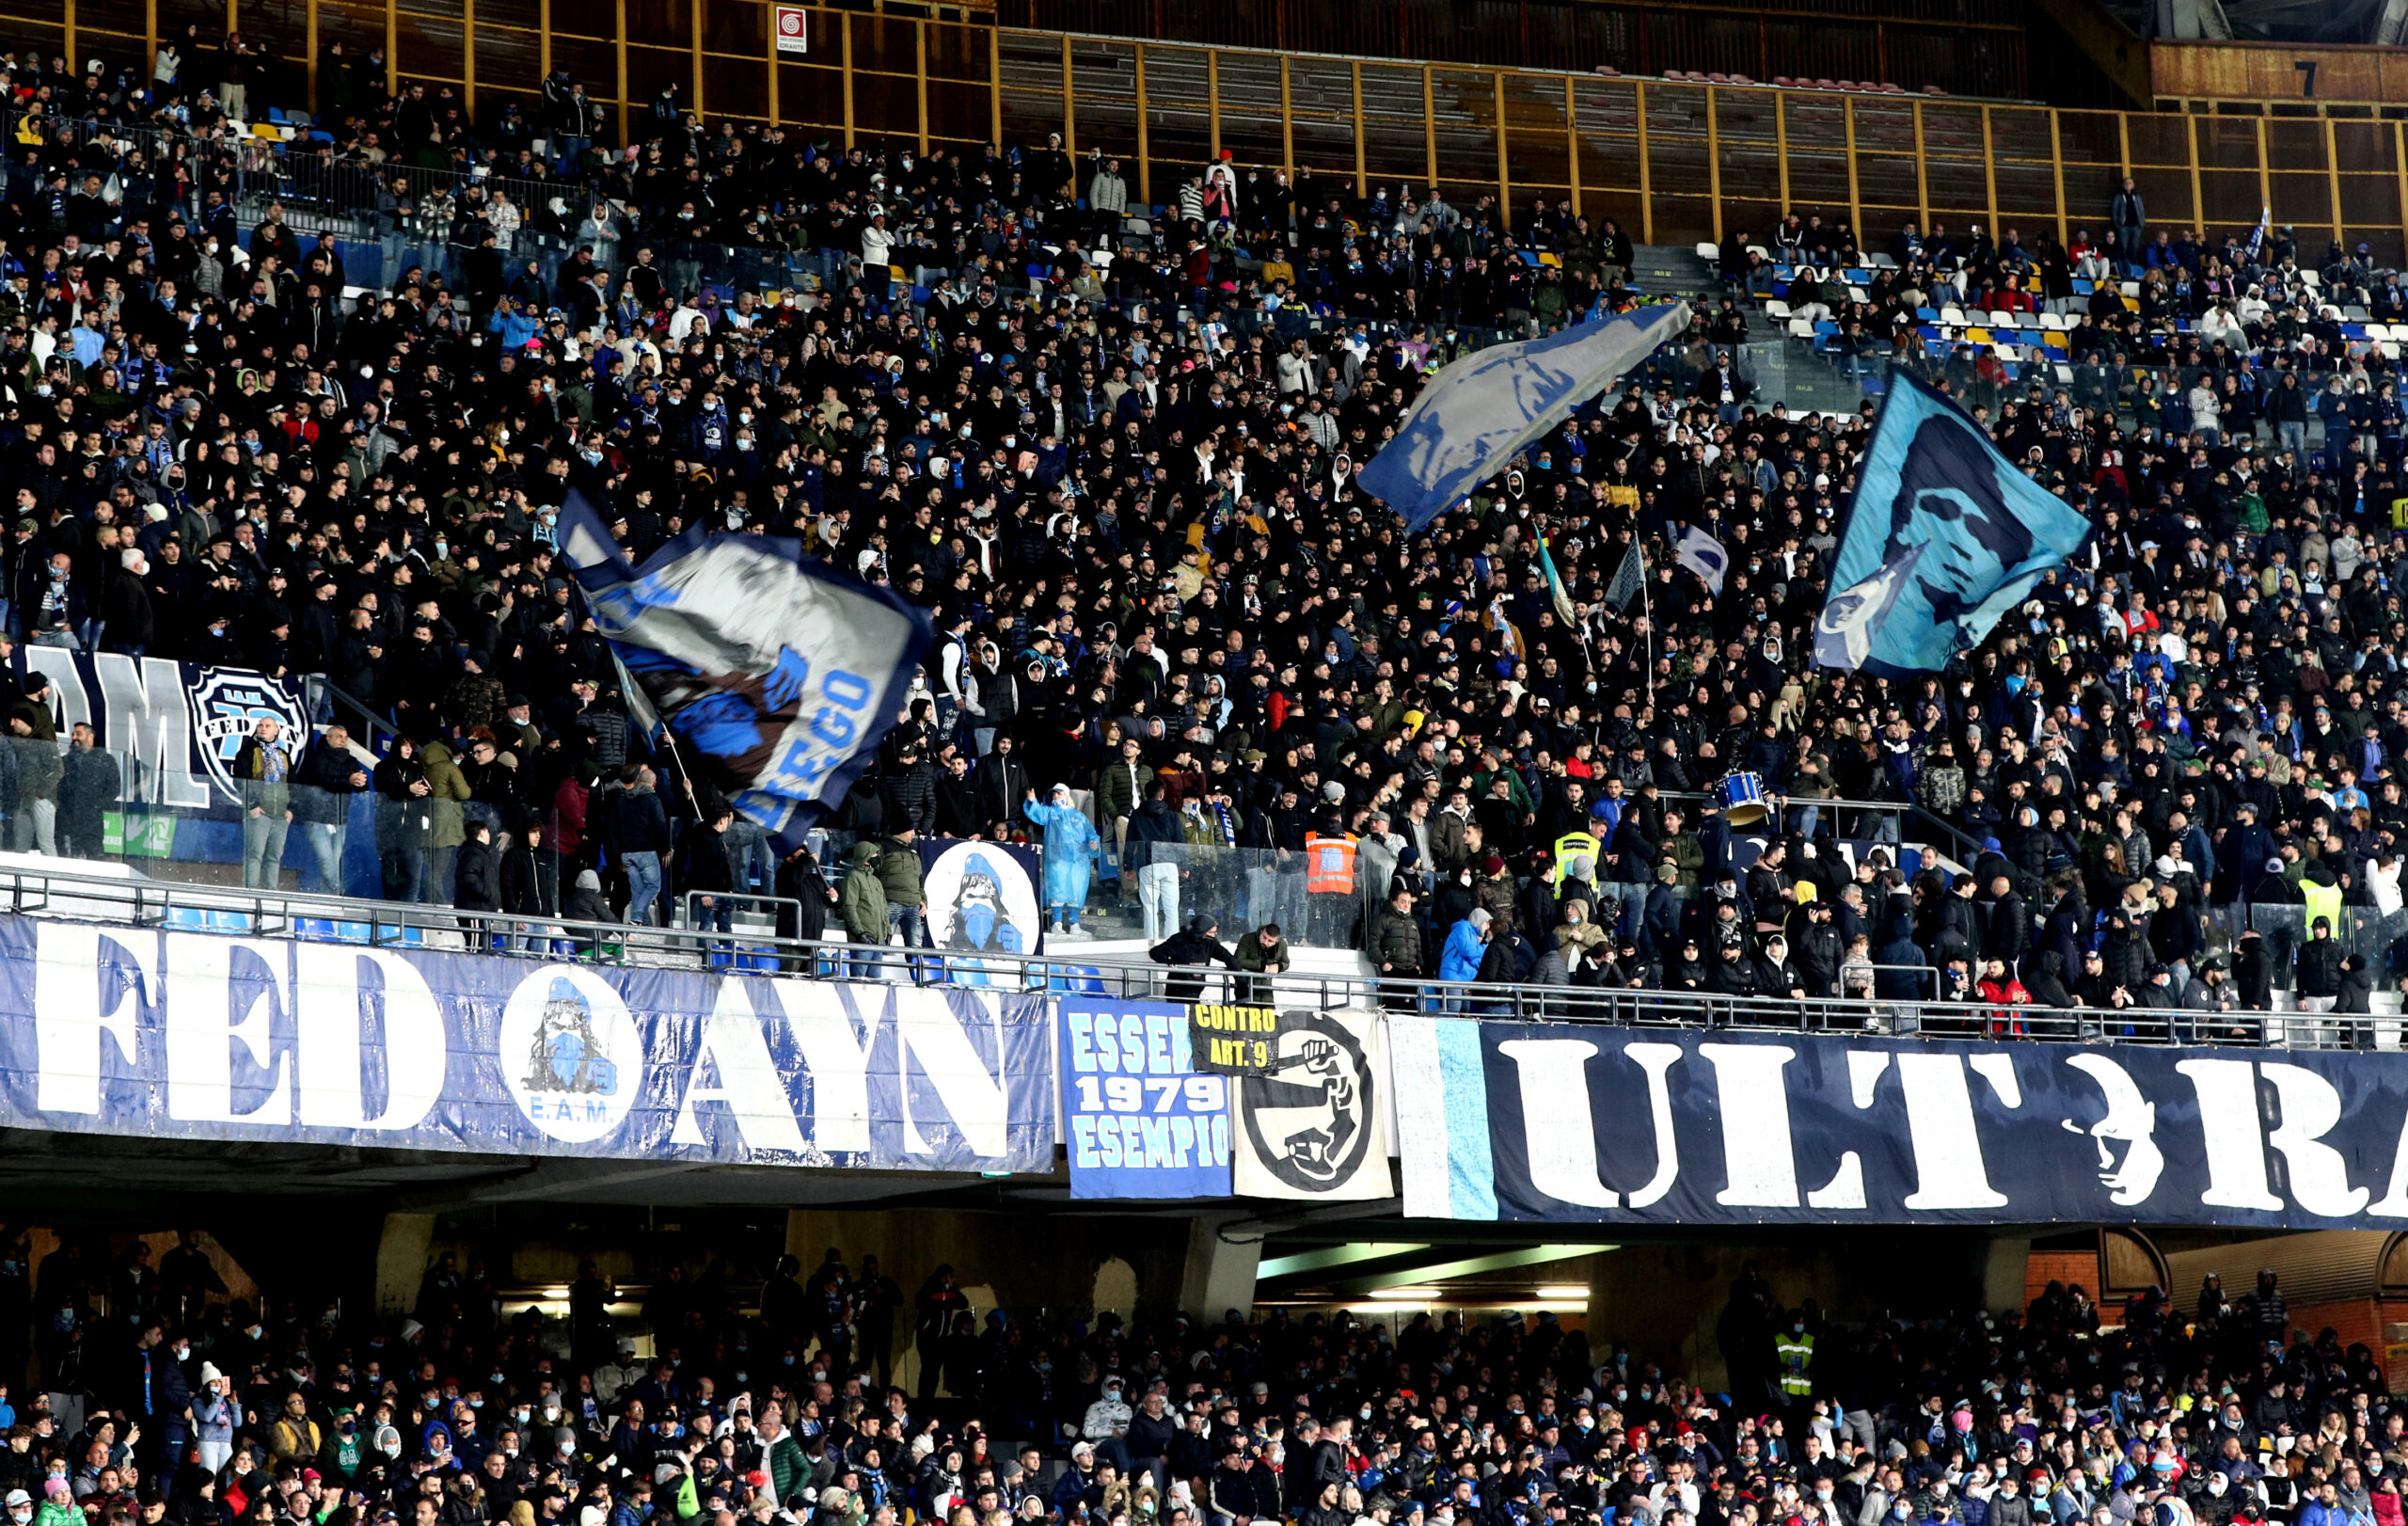 Stadio Maradona biglietti Napoli Barcellona